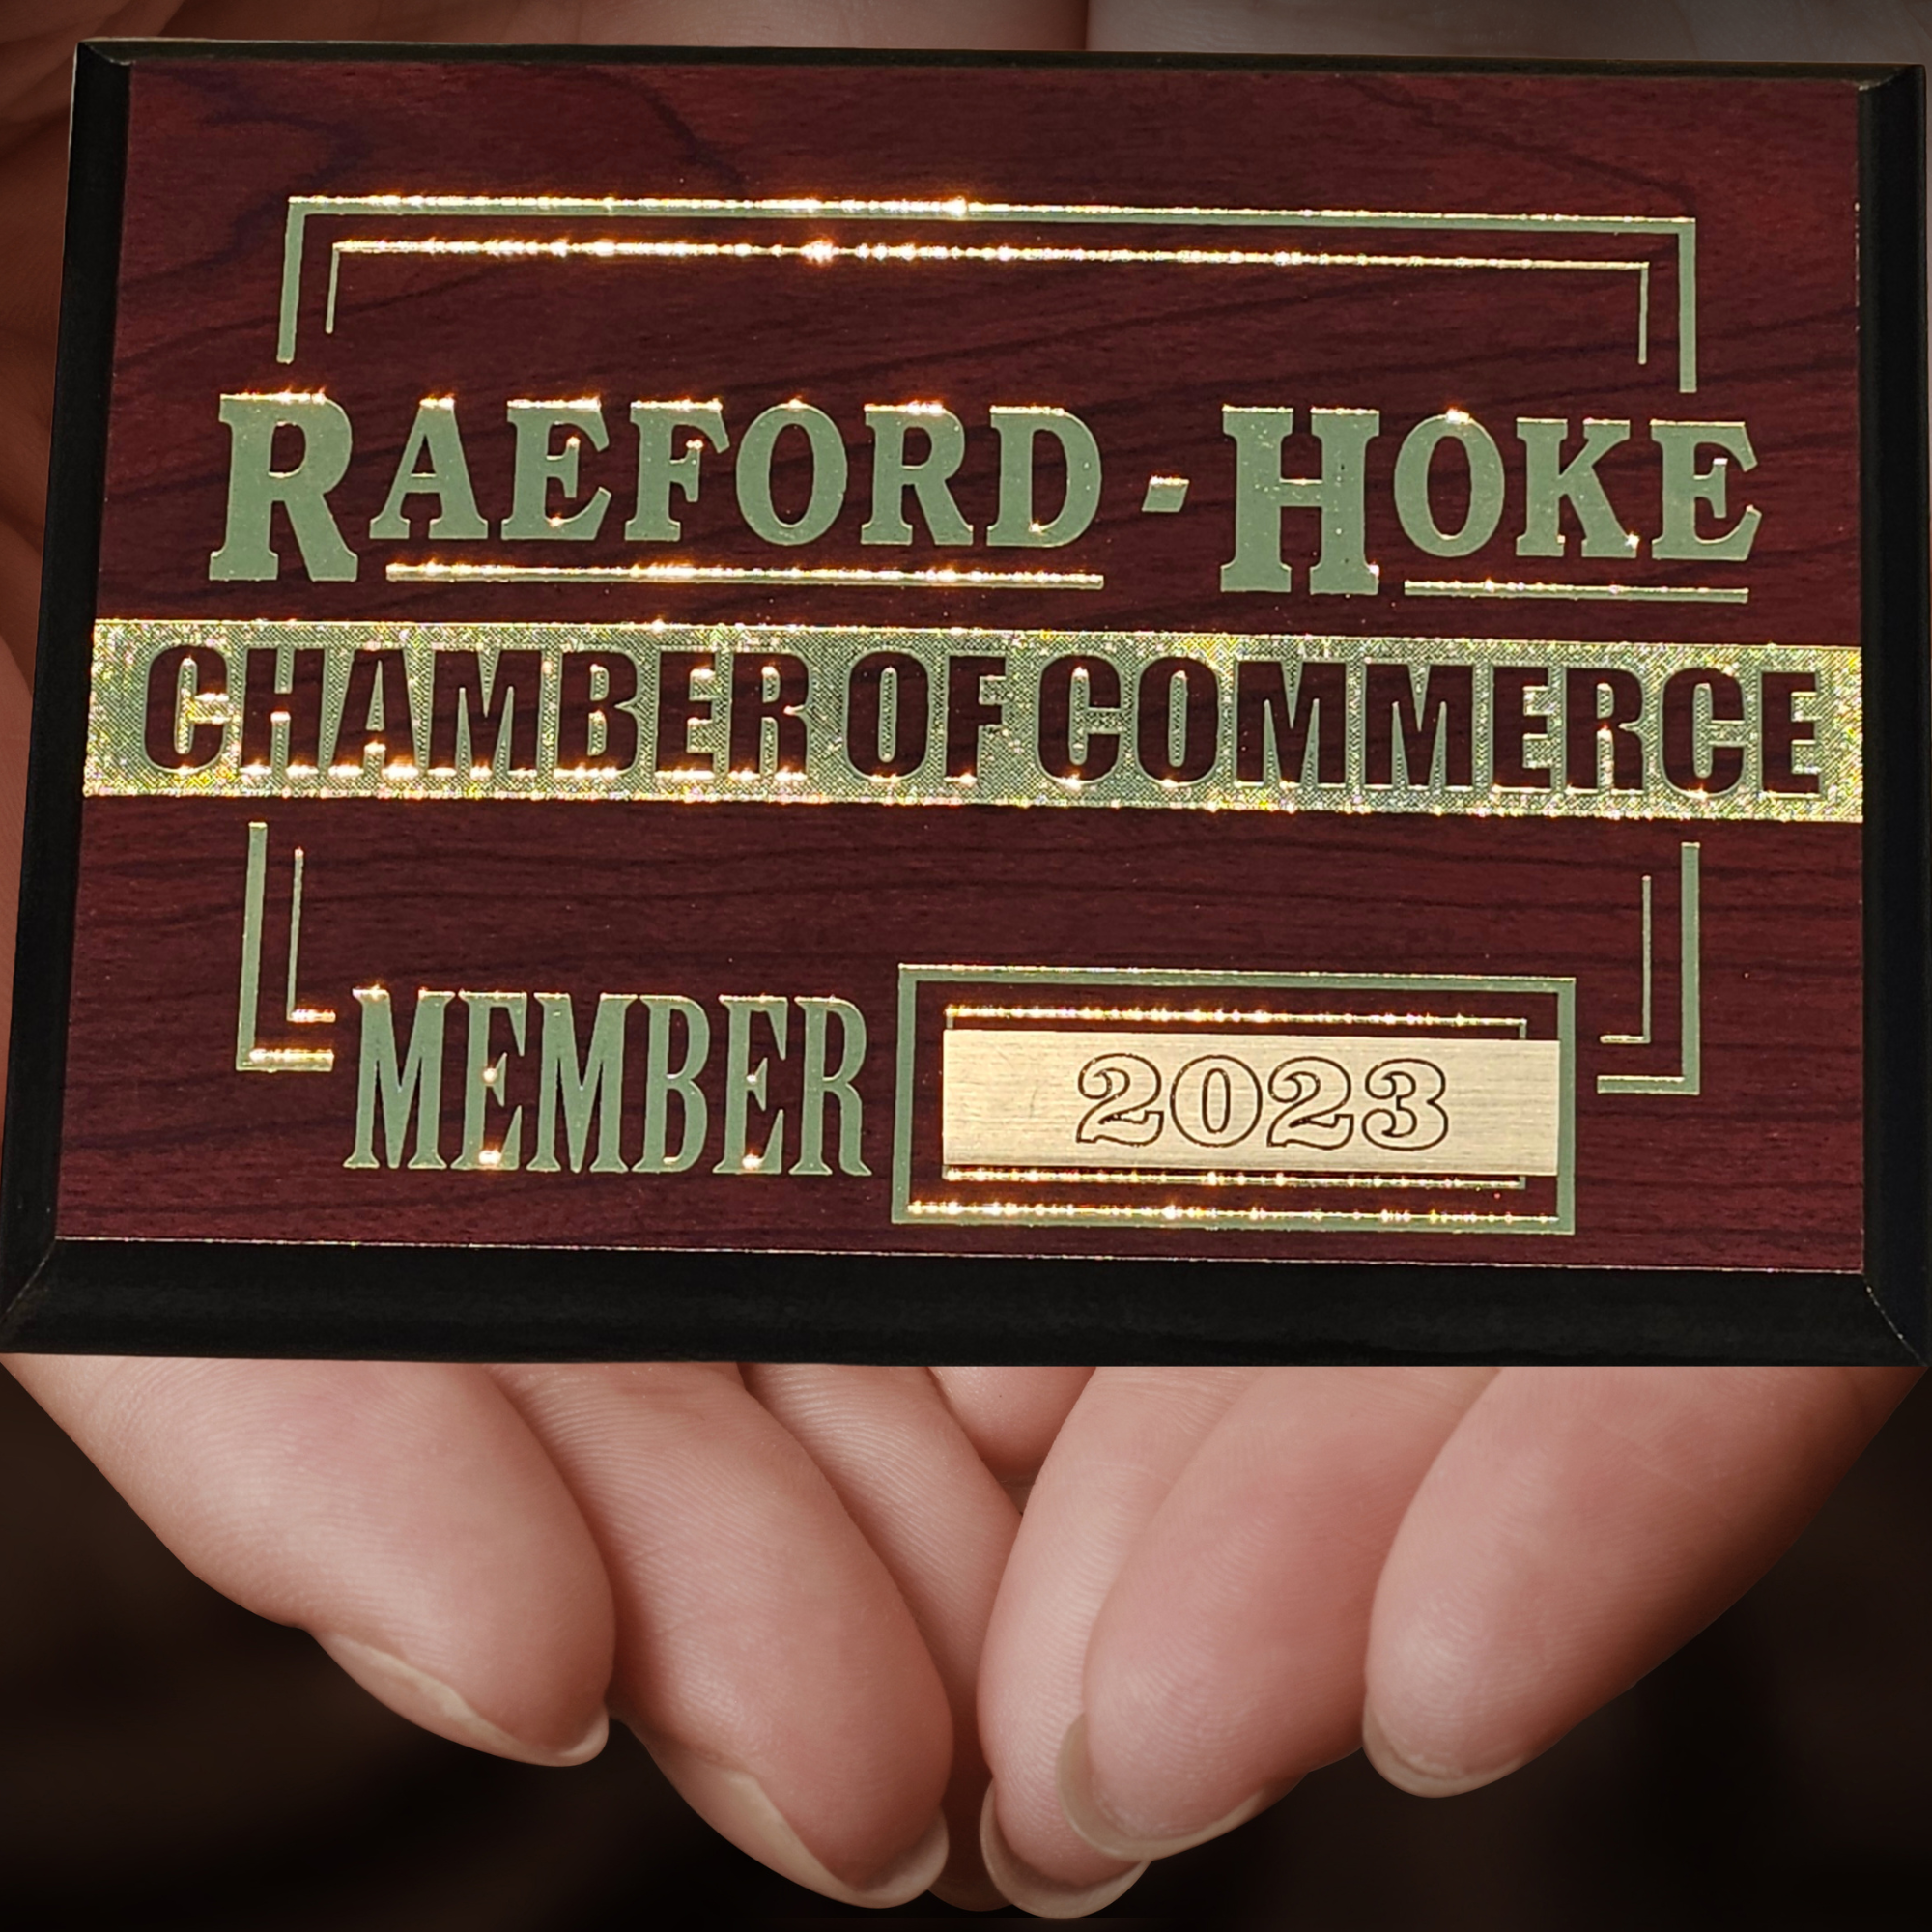 Welcome Raeford Hoke Chamber